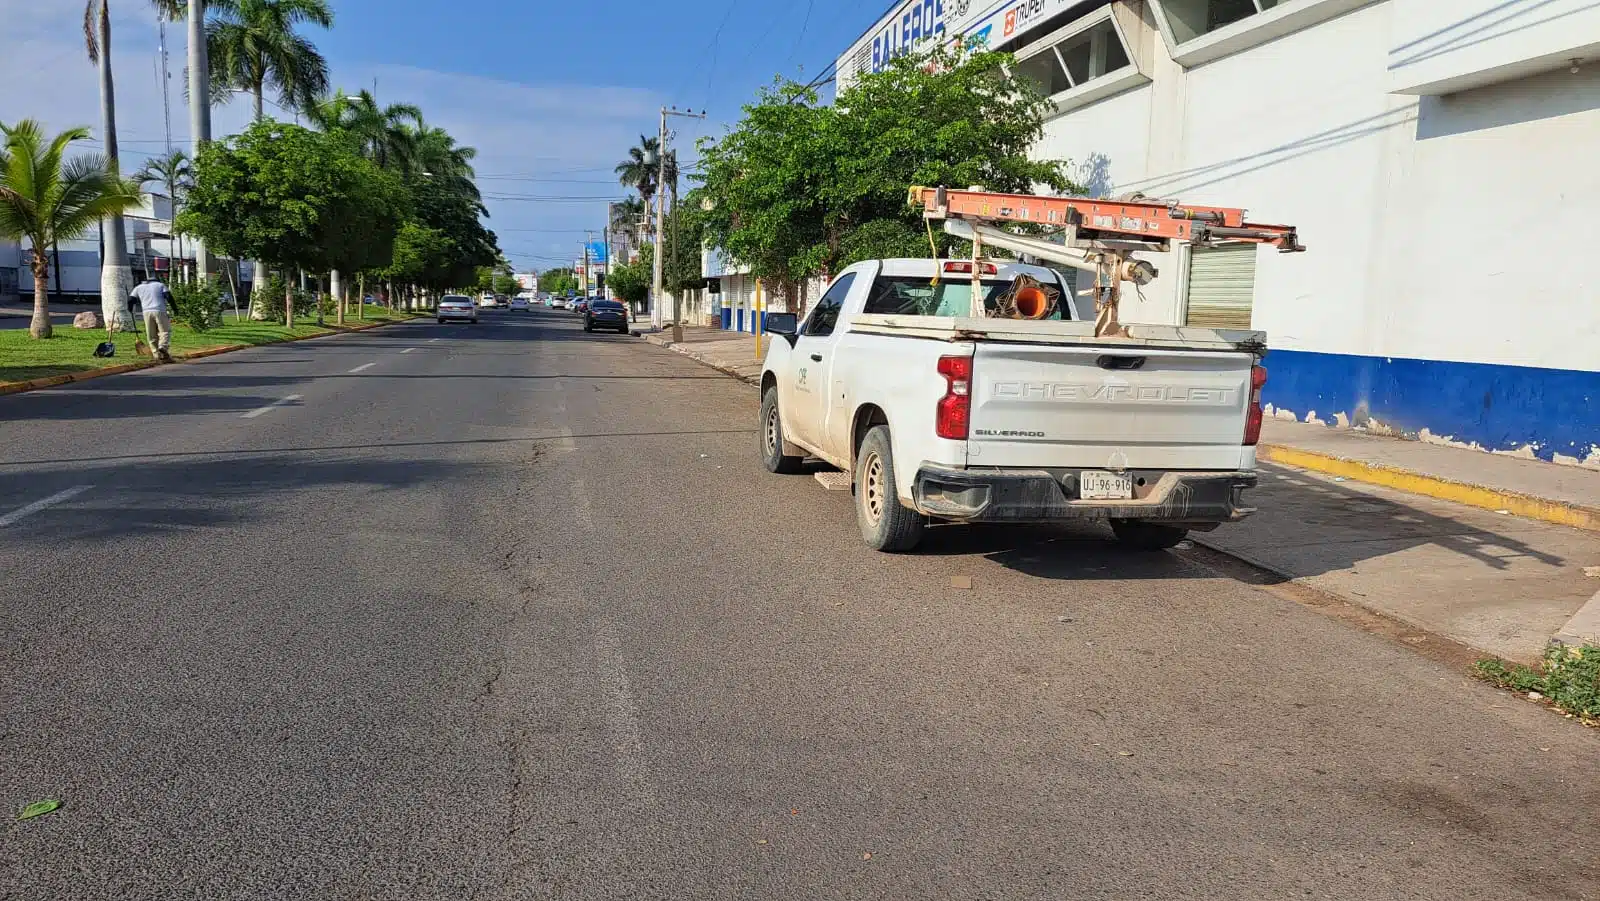 Una camioneta de la CFE estacionada, carros, calle pavimentada, árboles, palmeras, césped y una persona podándolo